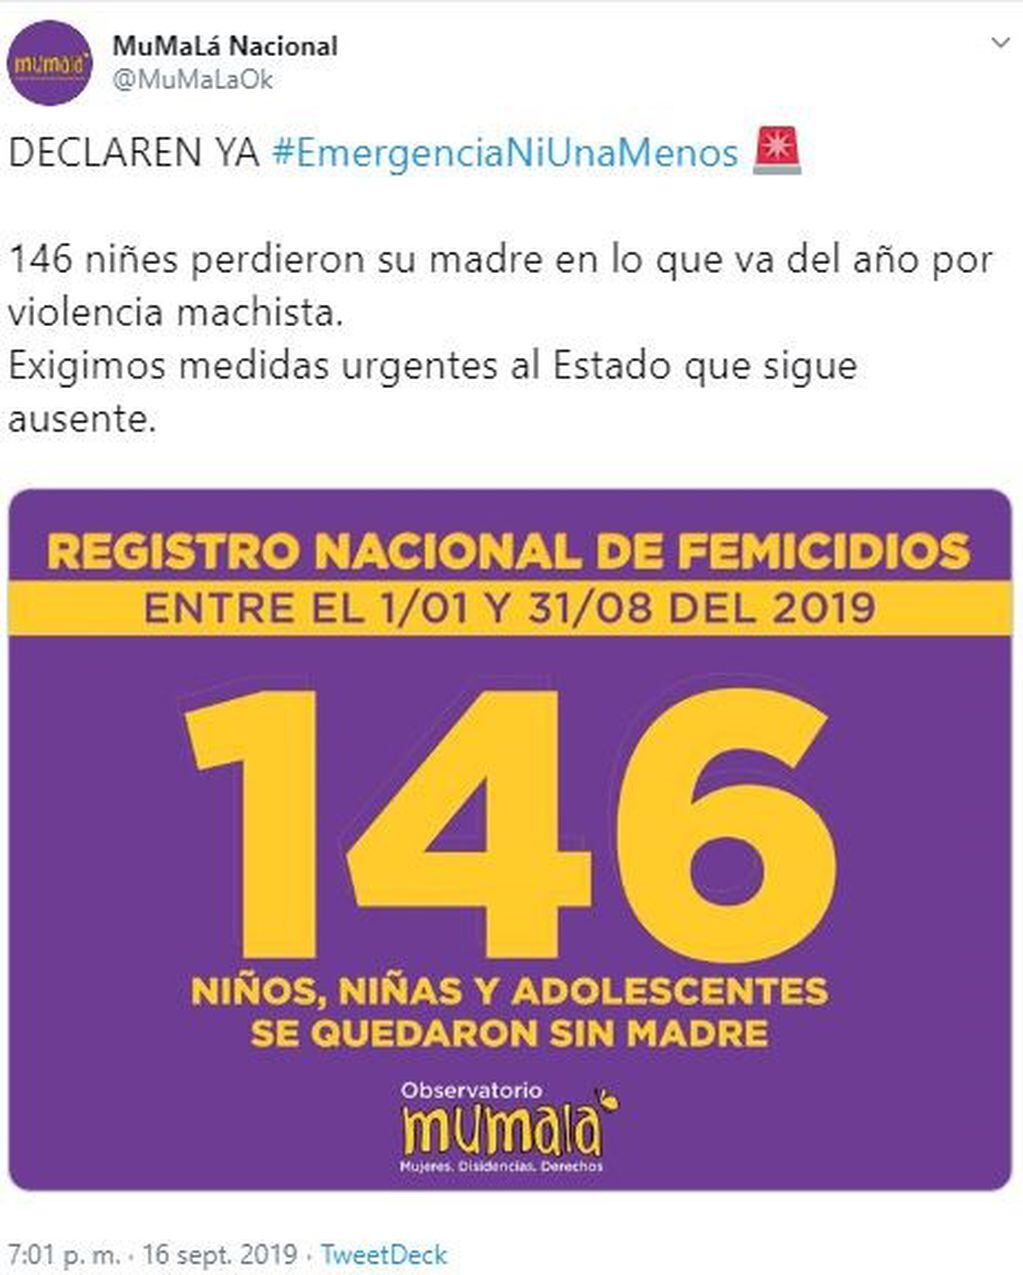 146 niñes perdieron su madre en lo que va del año por violencia machista. (Twitter)